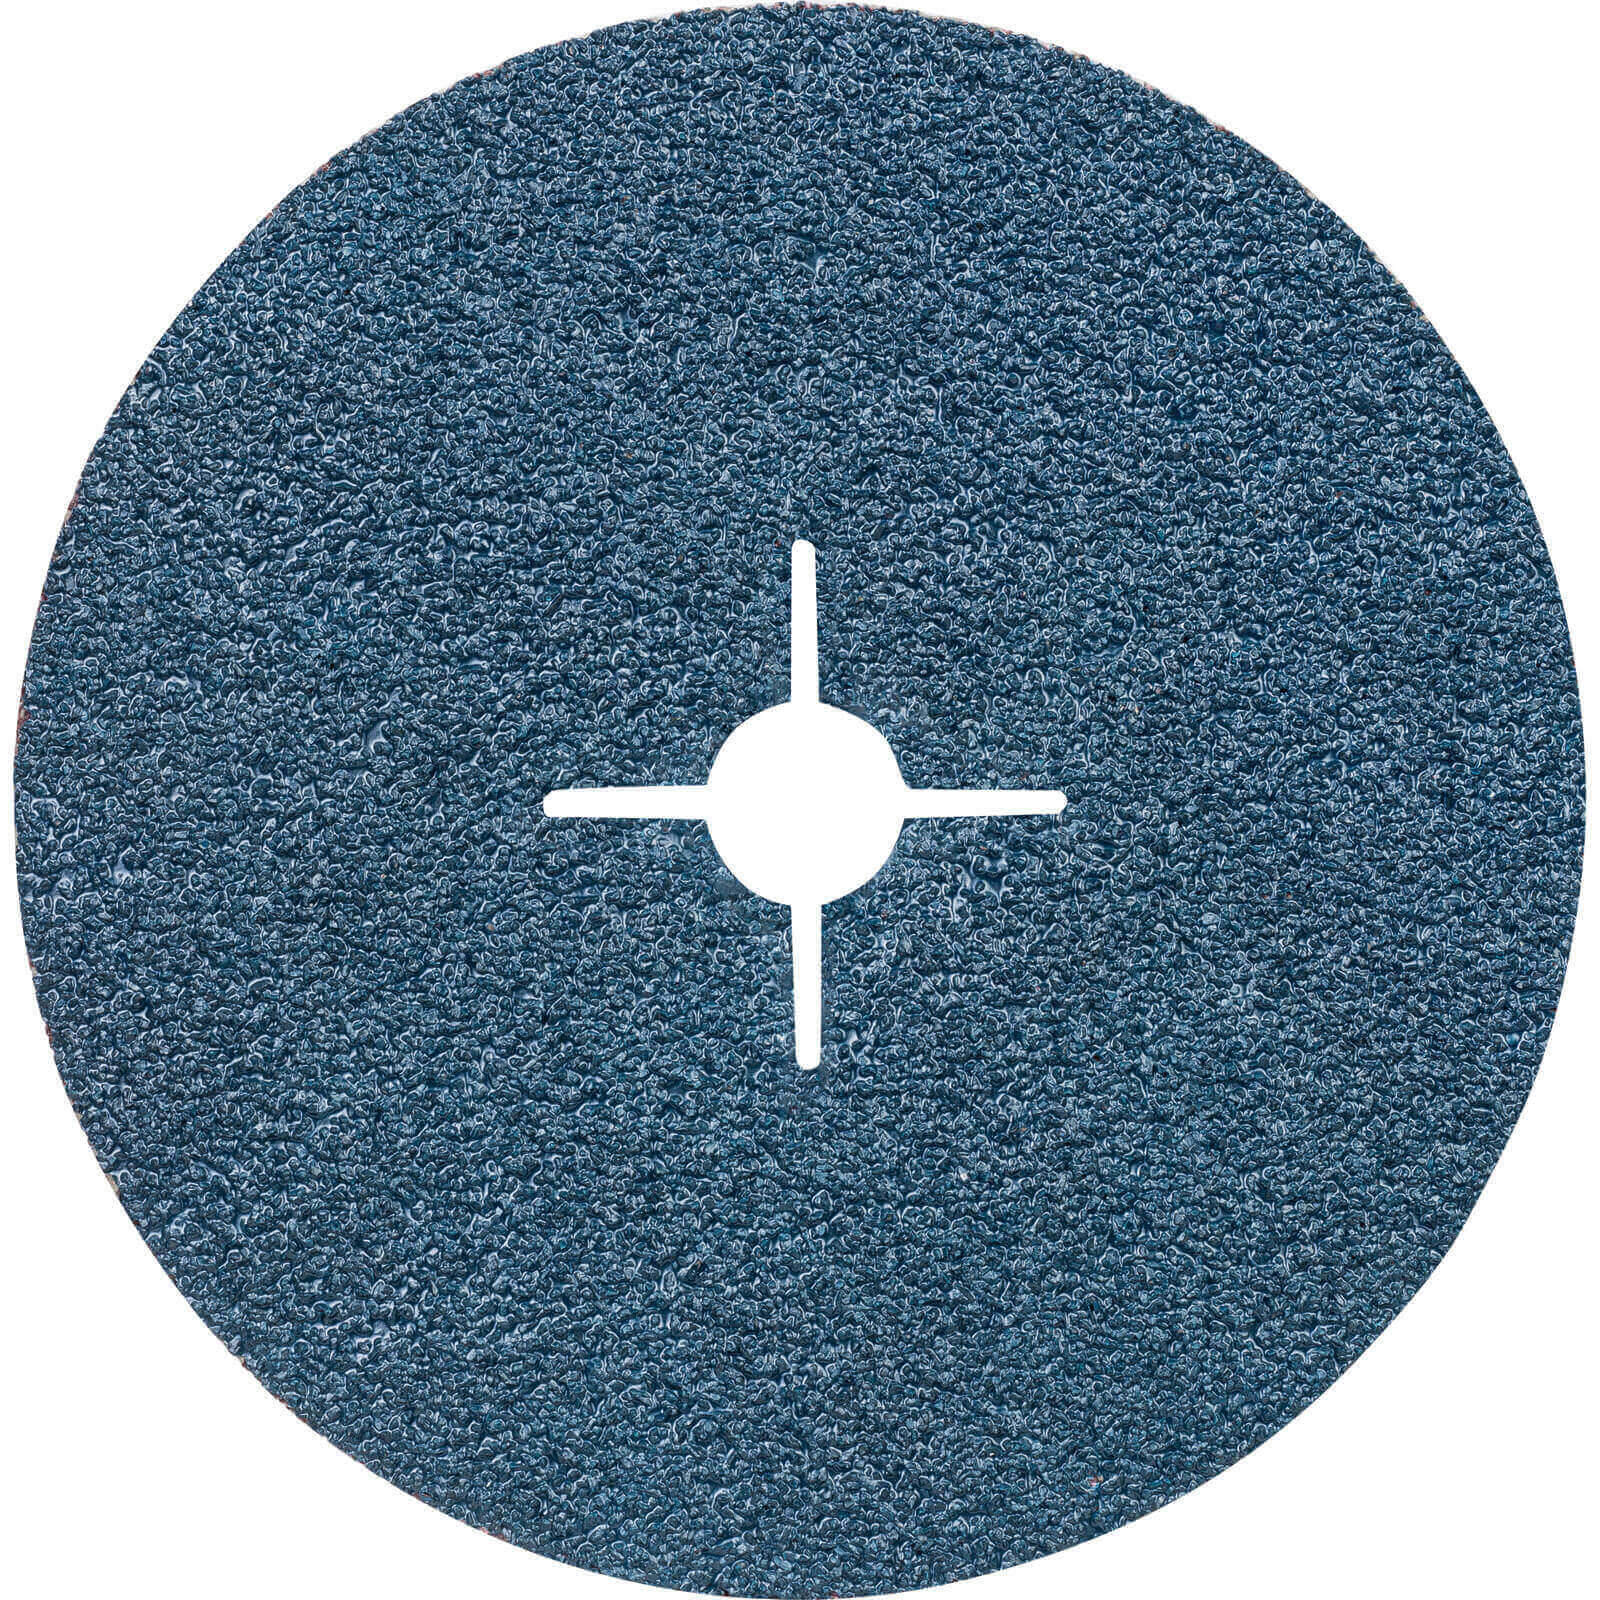 Photos - Abrasive Wheel / Belt Bosch Blue Metal Fibre Sanding Disc 180mm 24g Pack of 1 2608606740 